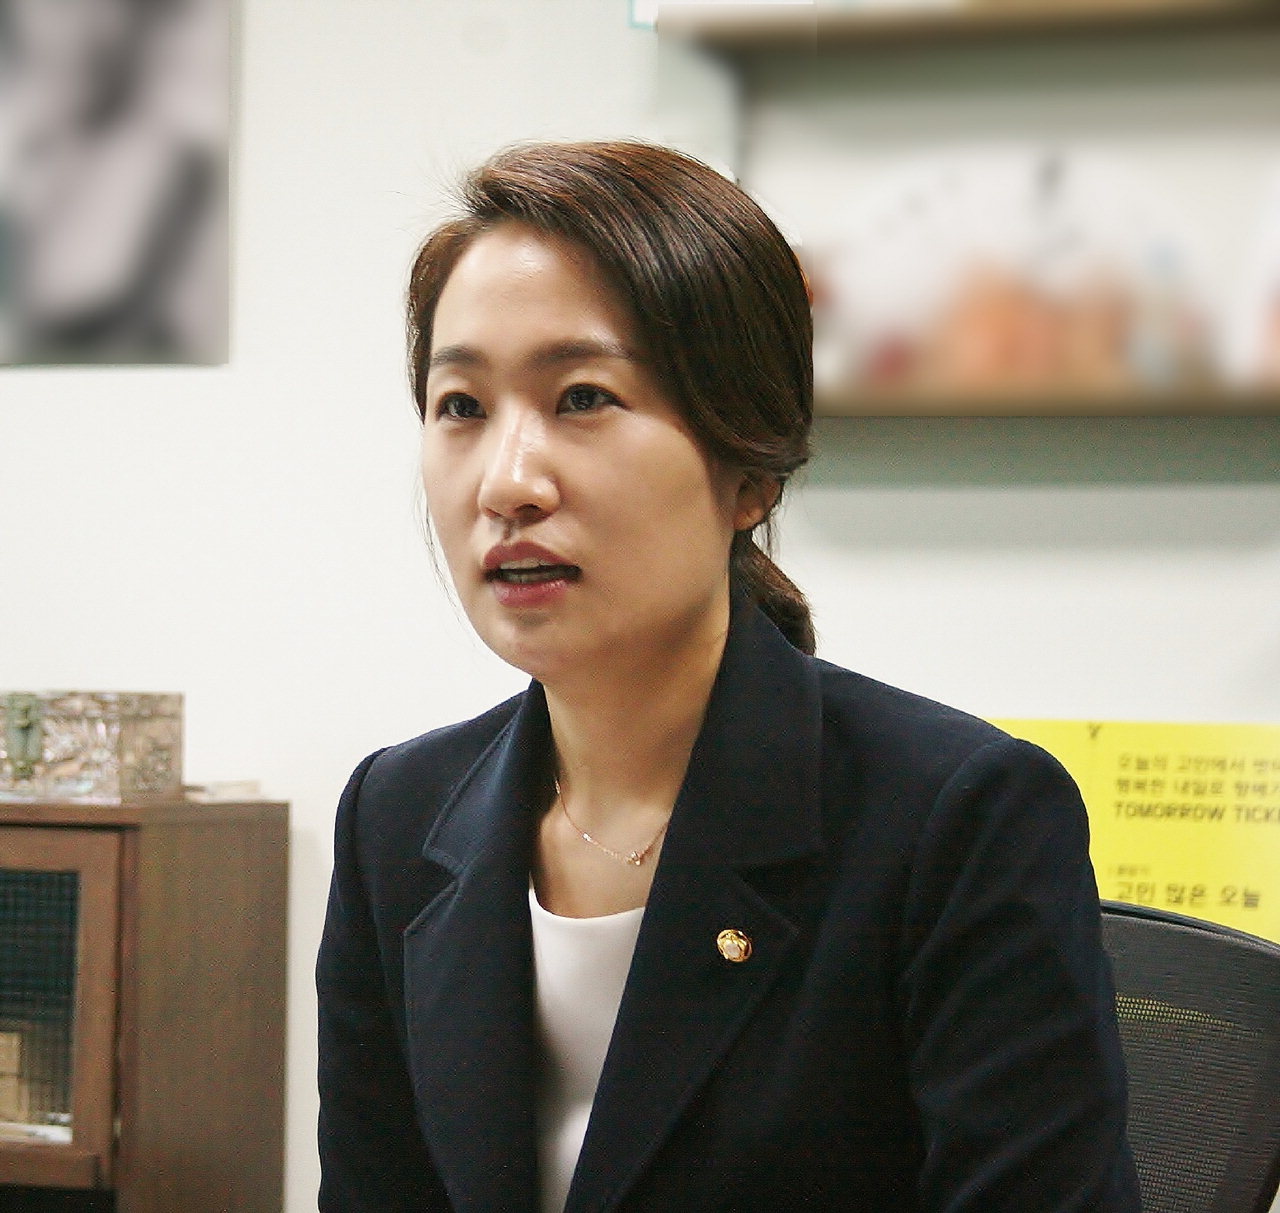 김수민 국회의원